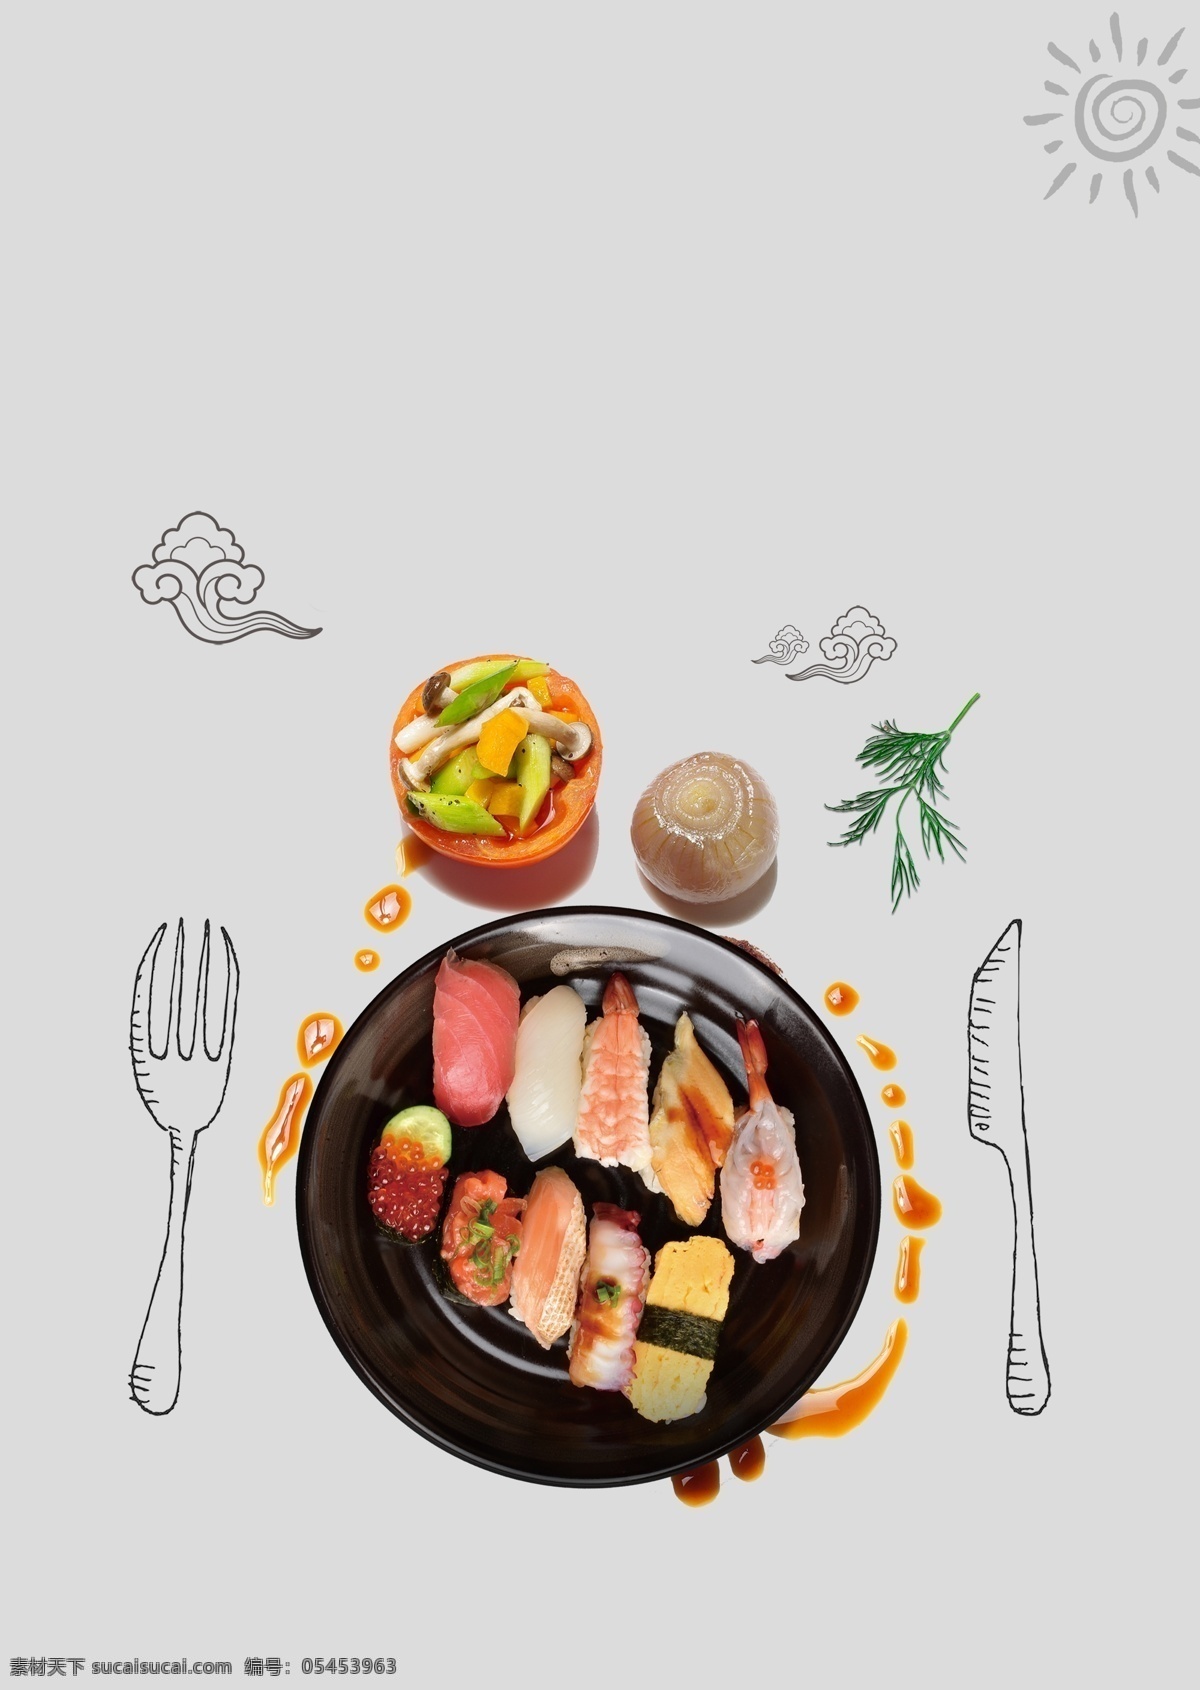 美味 日 系 寿司 海报 美食海报下载 平面海报 日本菜 日本料理 日本料理菜单 日本料理海报 日本料理文化 日本美食 日本寿司 日料海报 日式料理 三文鱼